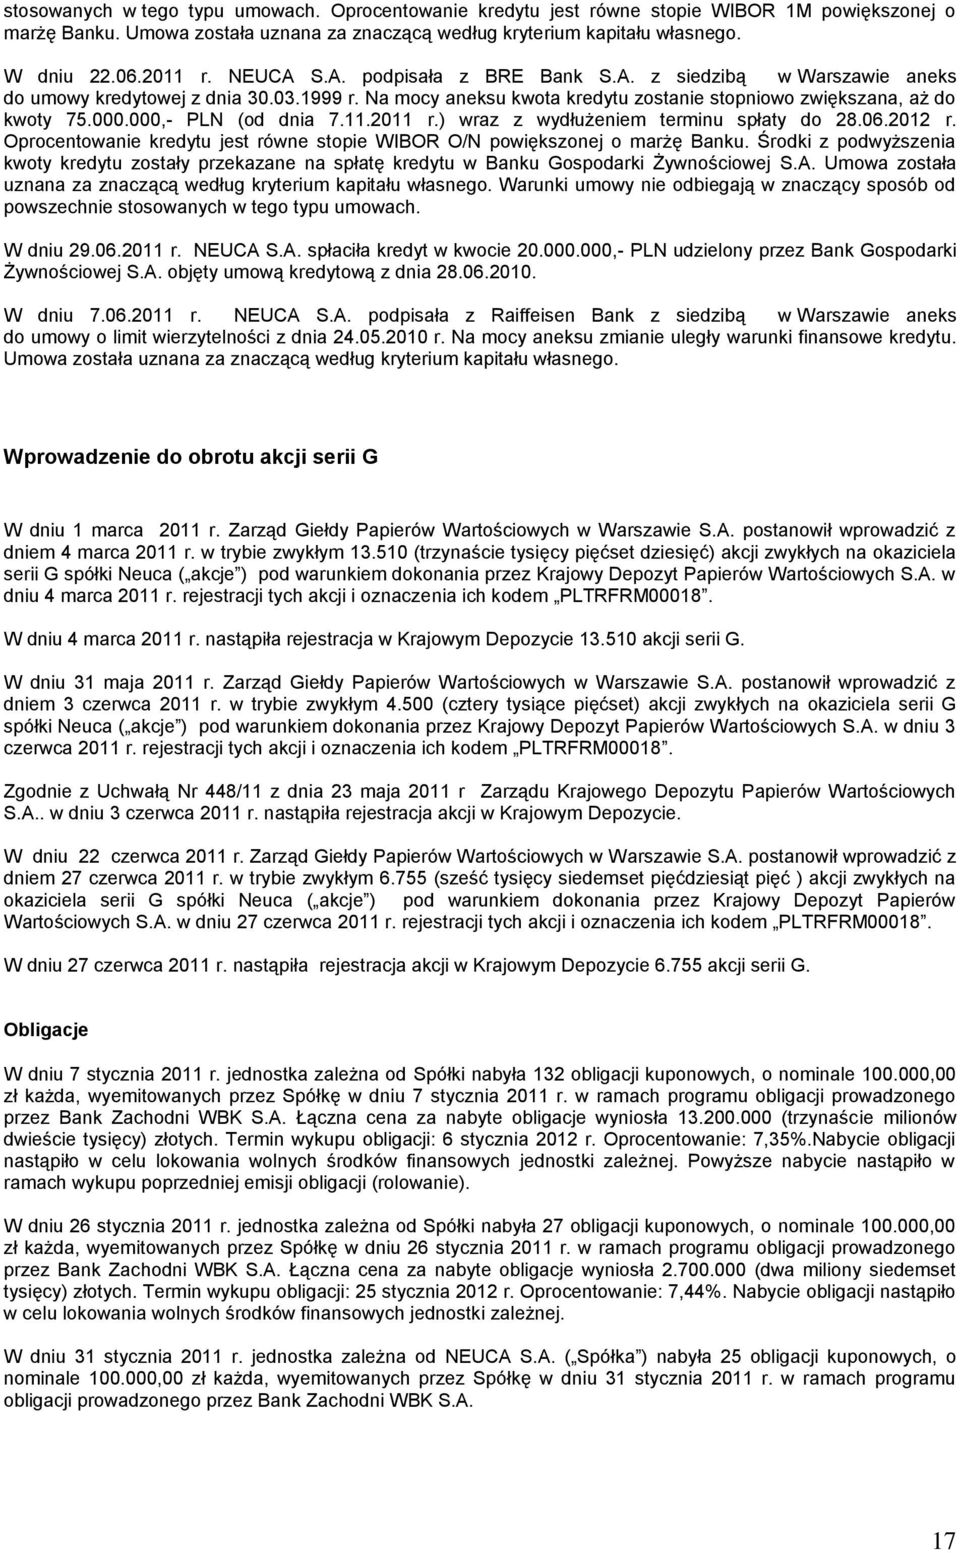 000,- PLN (od dnia 7.11.2011 r.) wraz z wydłużeniem terminu spłaty do 28.06.2012 r. Oprocentowanie kredytu jest równe stopie WIBOR O/N powiększonej o marżę Banku.